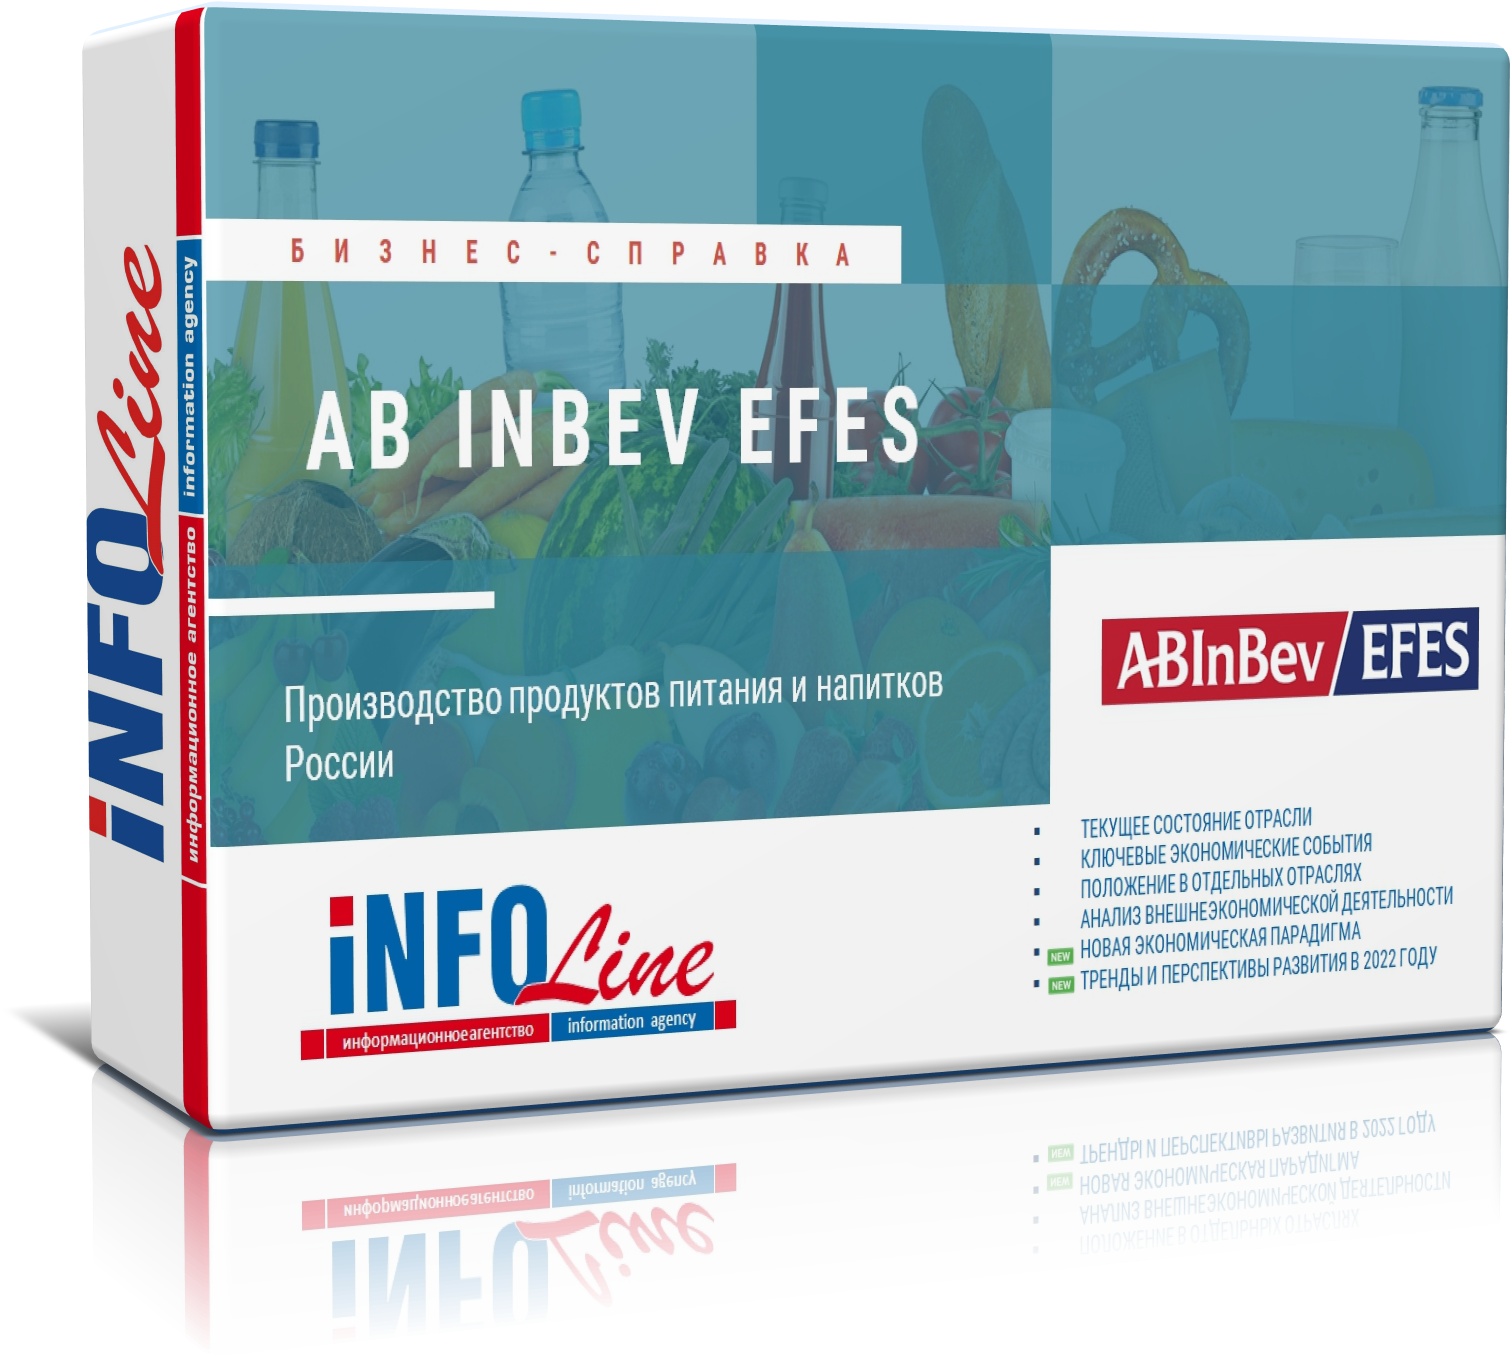 Бизнес-справка по компании "Ab Inbev Efes"